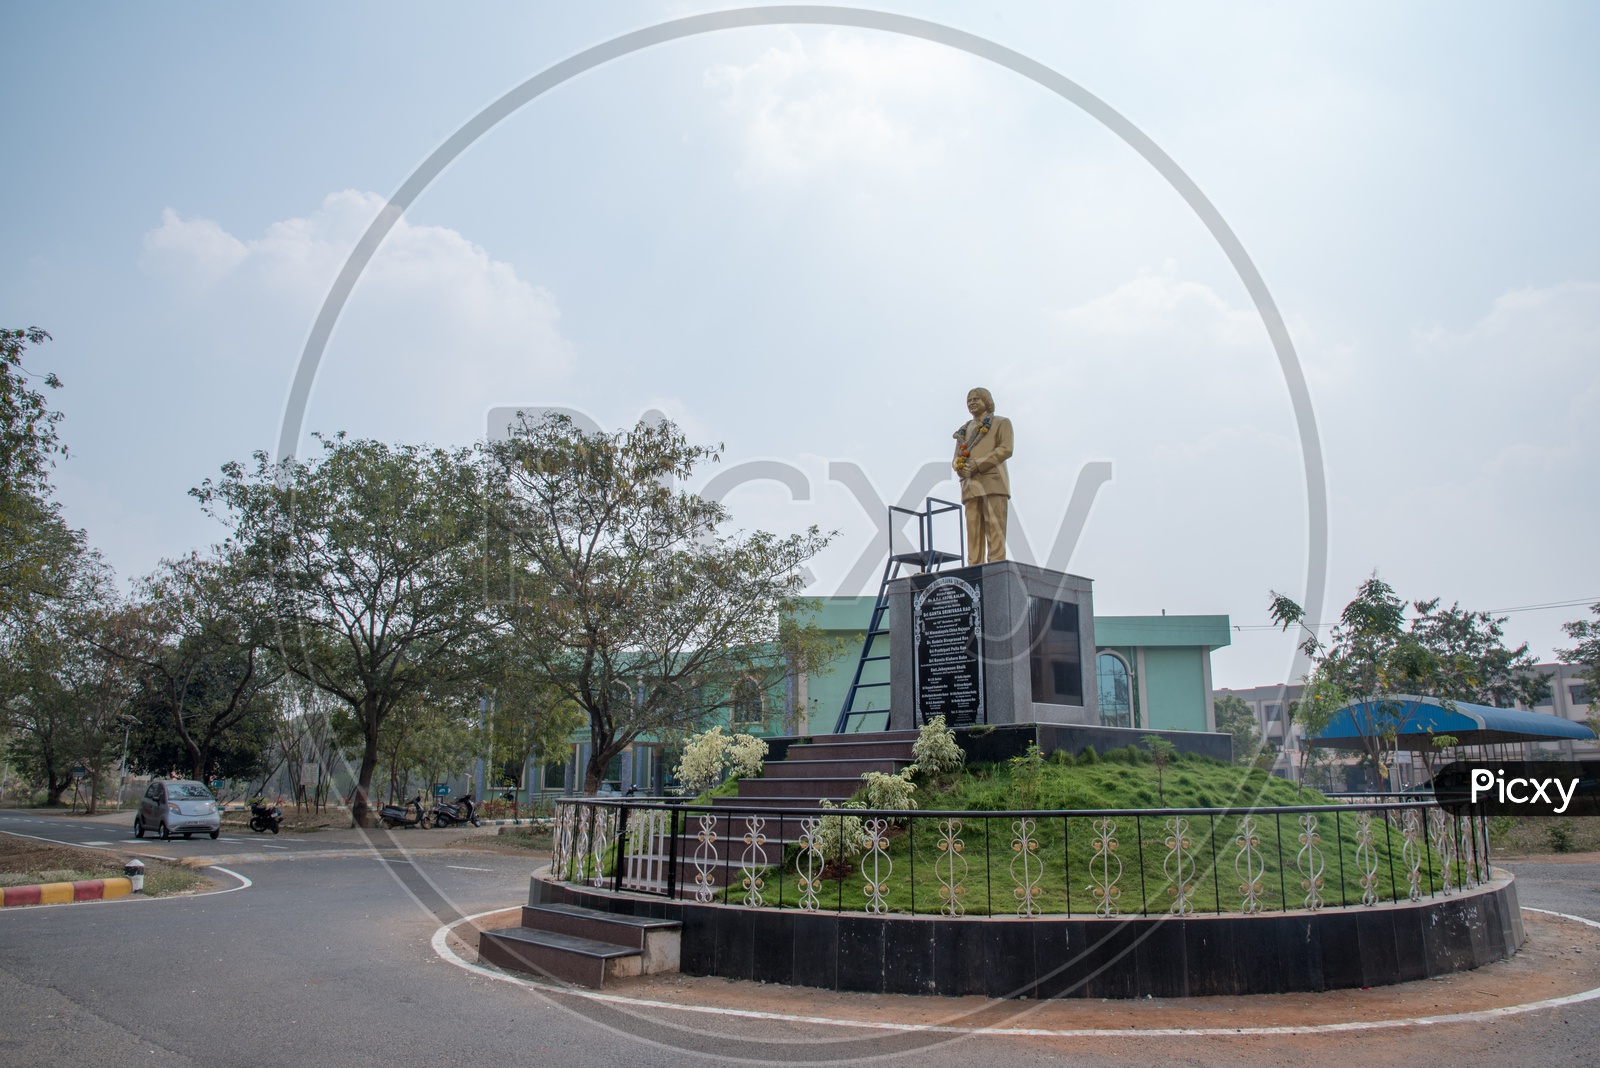 Abdul Kalam Statue at Administrative Block